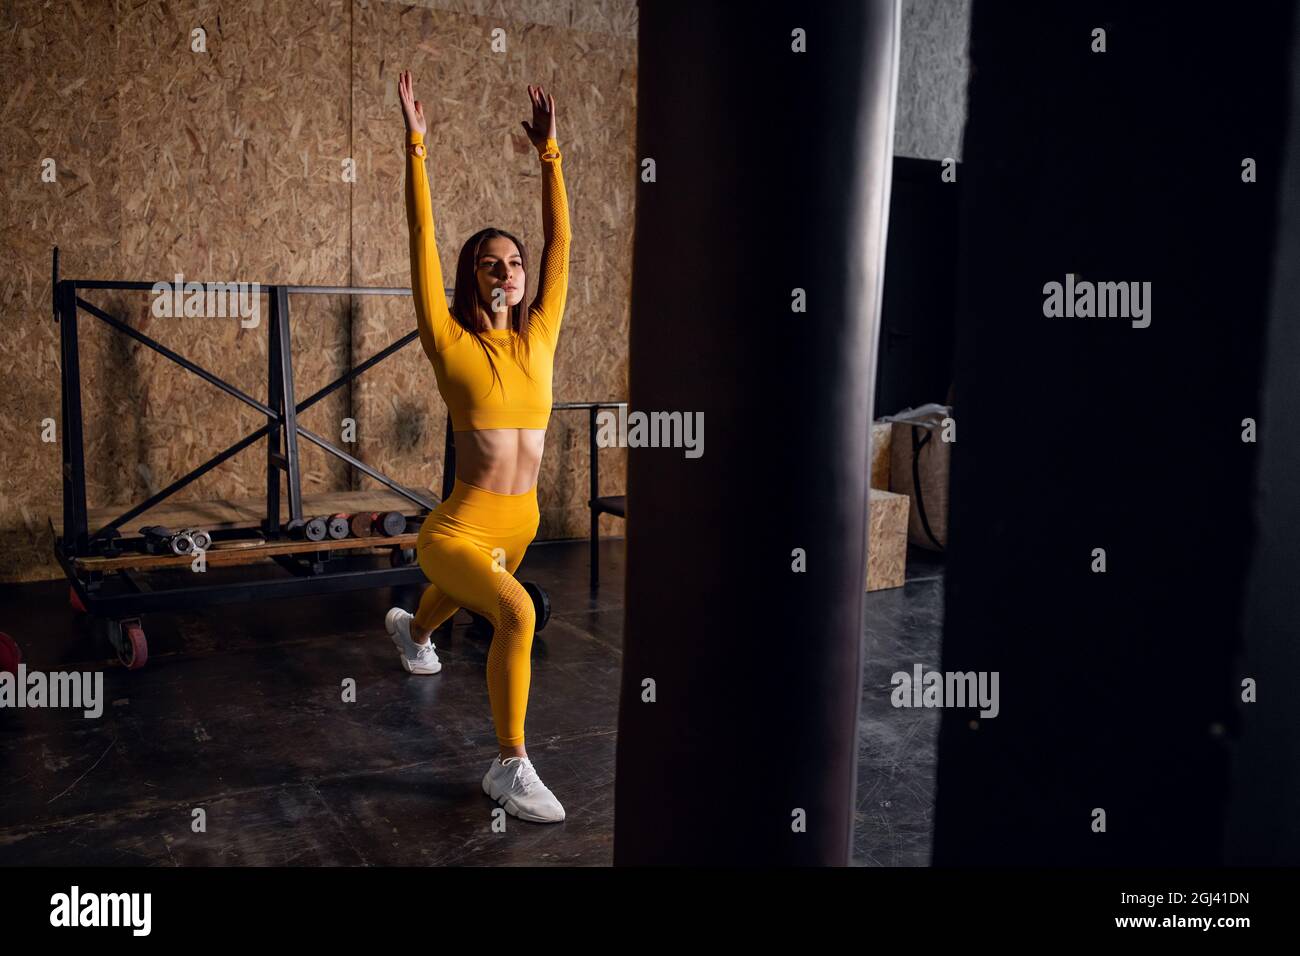 Junge Yogi-Frau, die Yoga-Konzept praktiziert, eine einbeinige King Pigeon-Übung macht, trainiert, Sportkleidung trägt, Loft-Studio Hintergrund Stockfoto